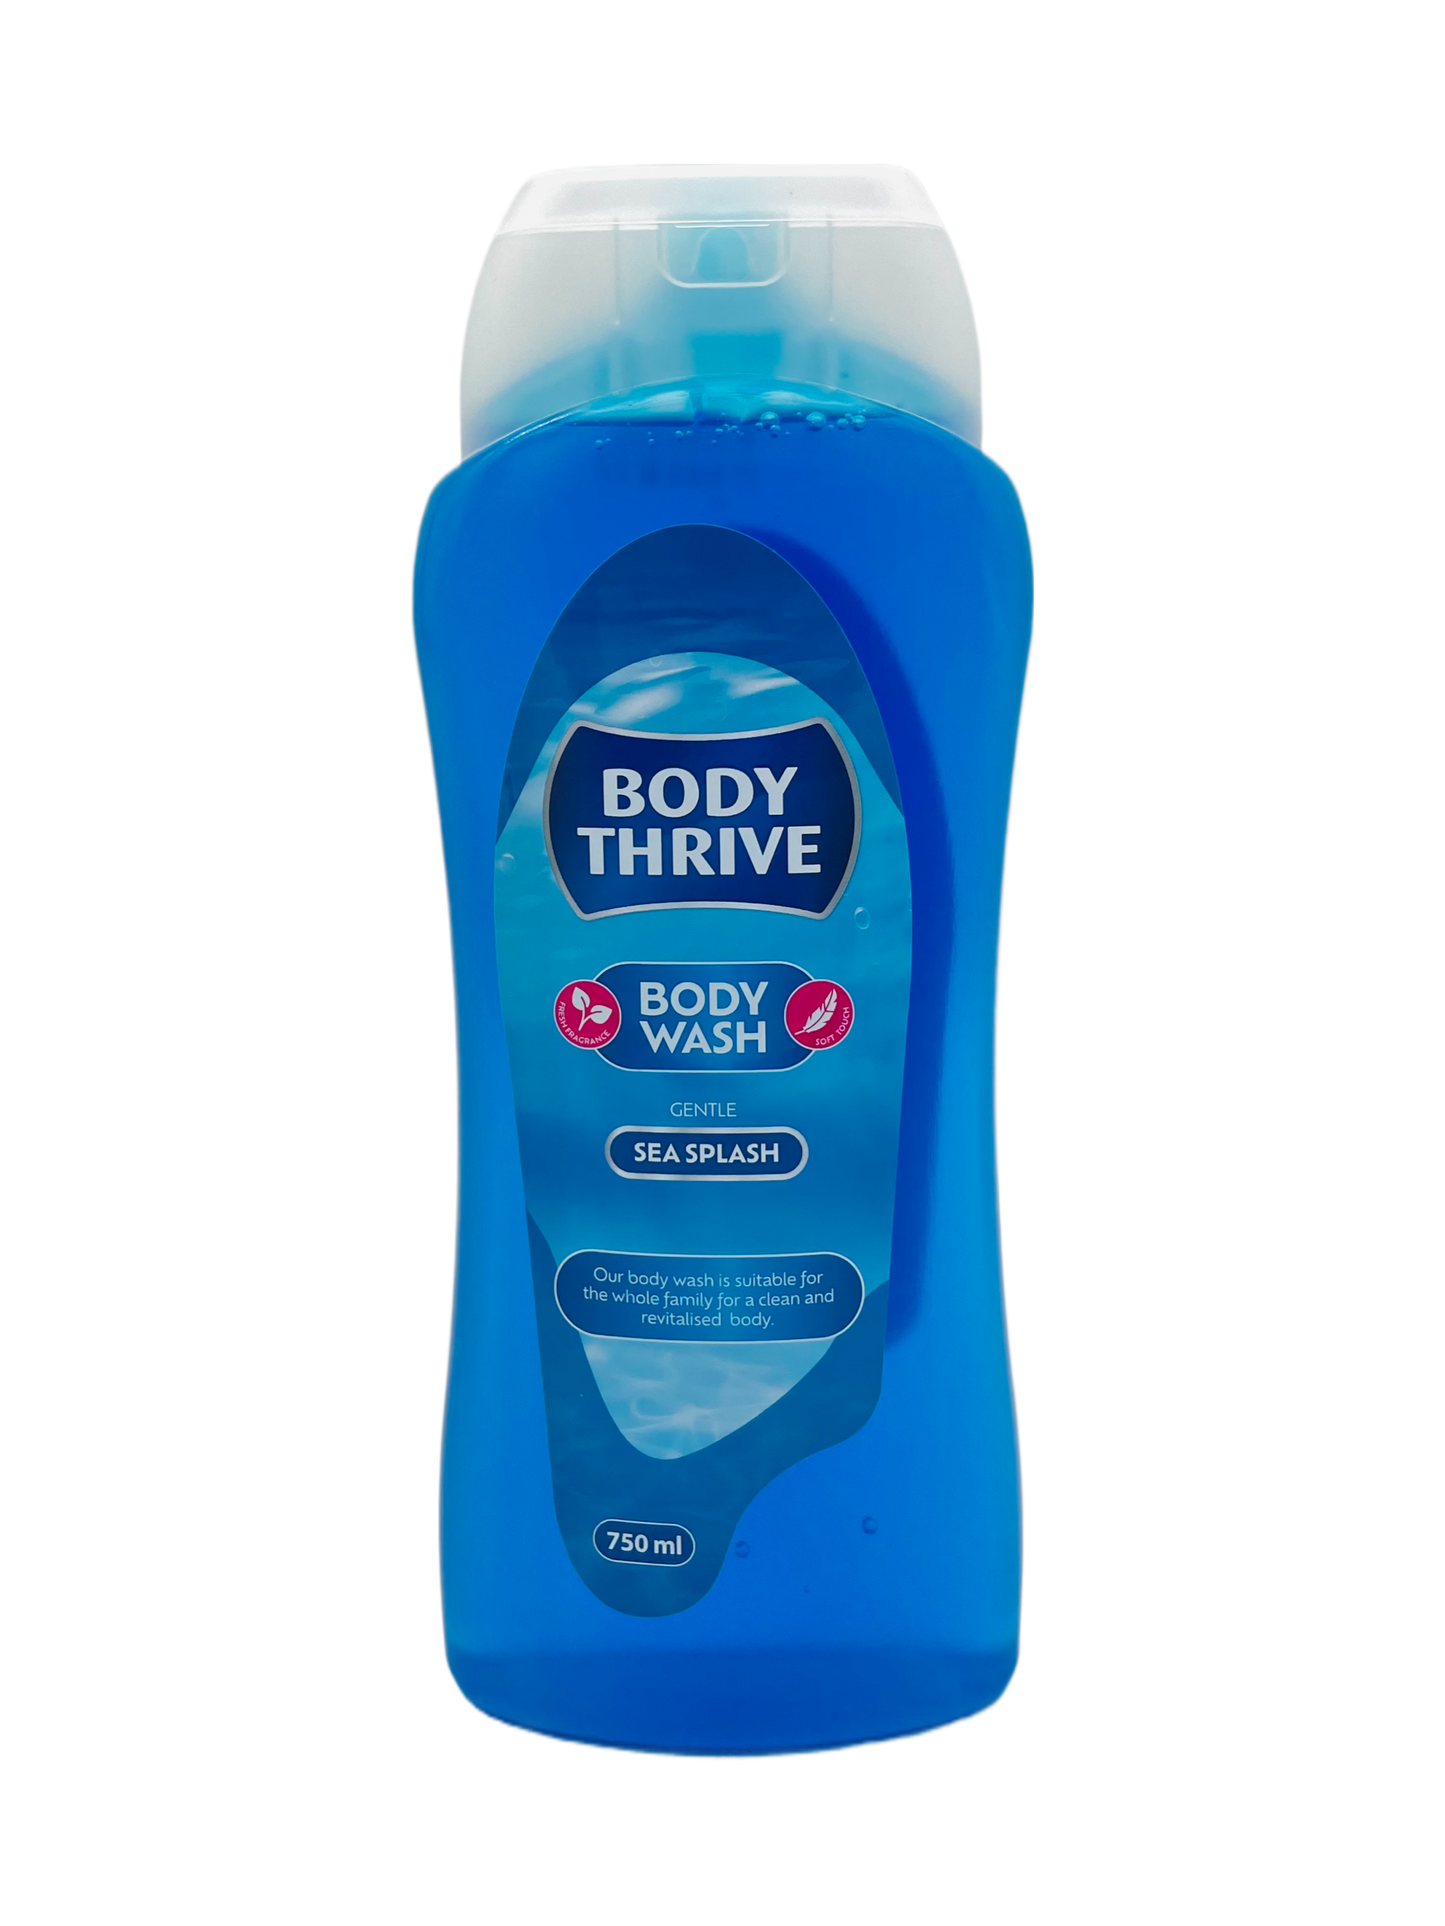 Body Thrive Body Wash Sea Splash 750ml